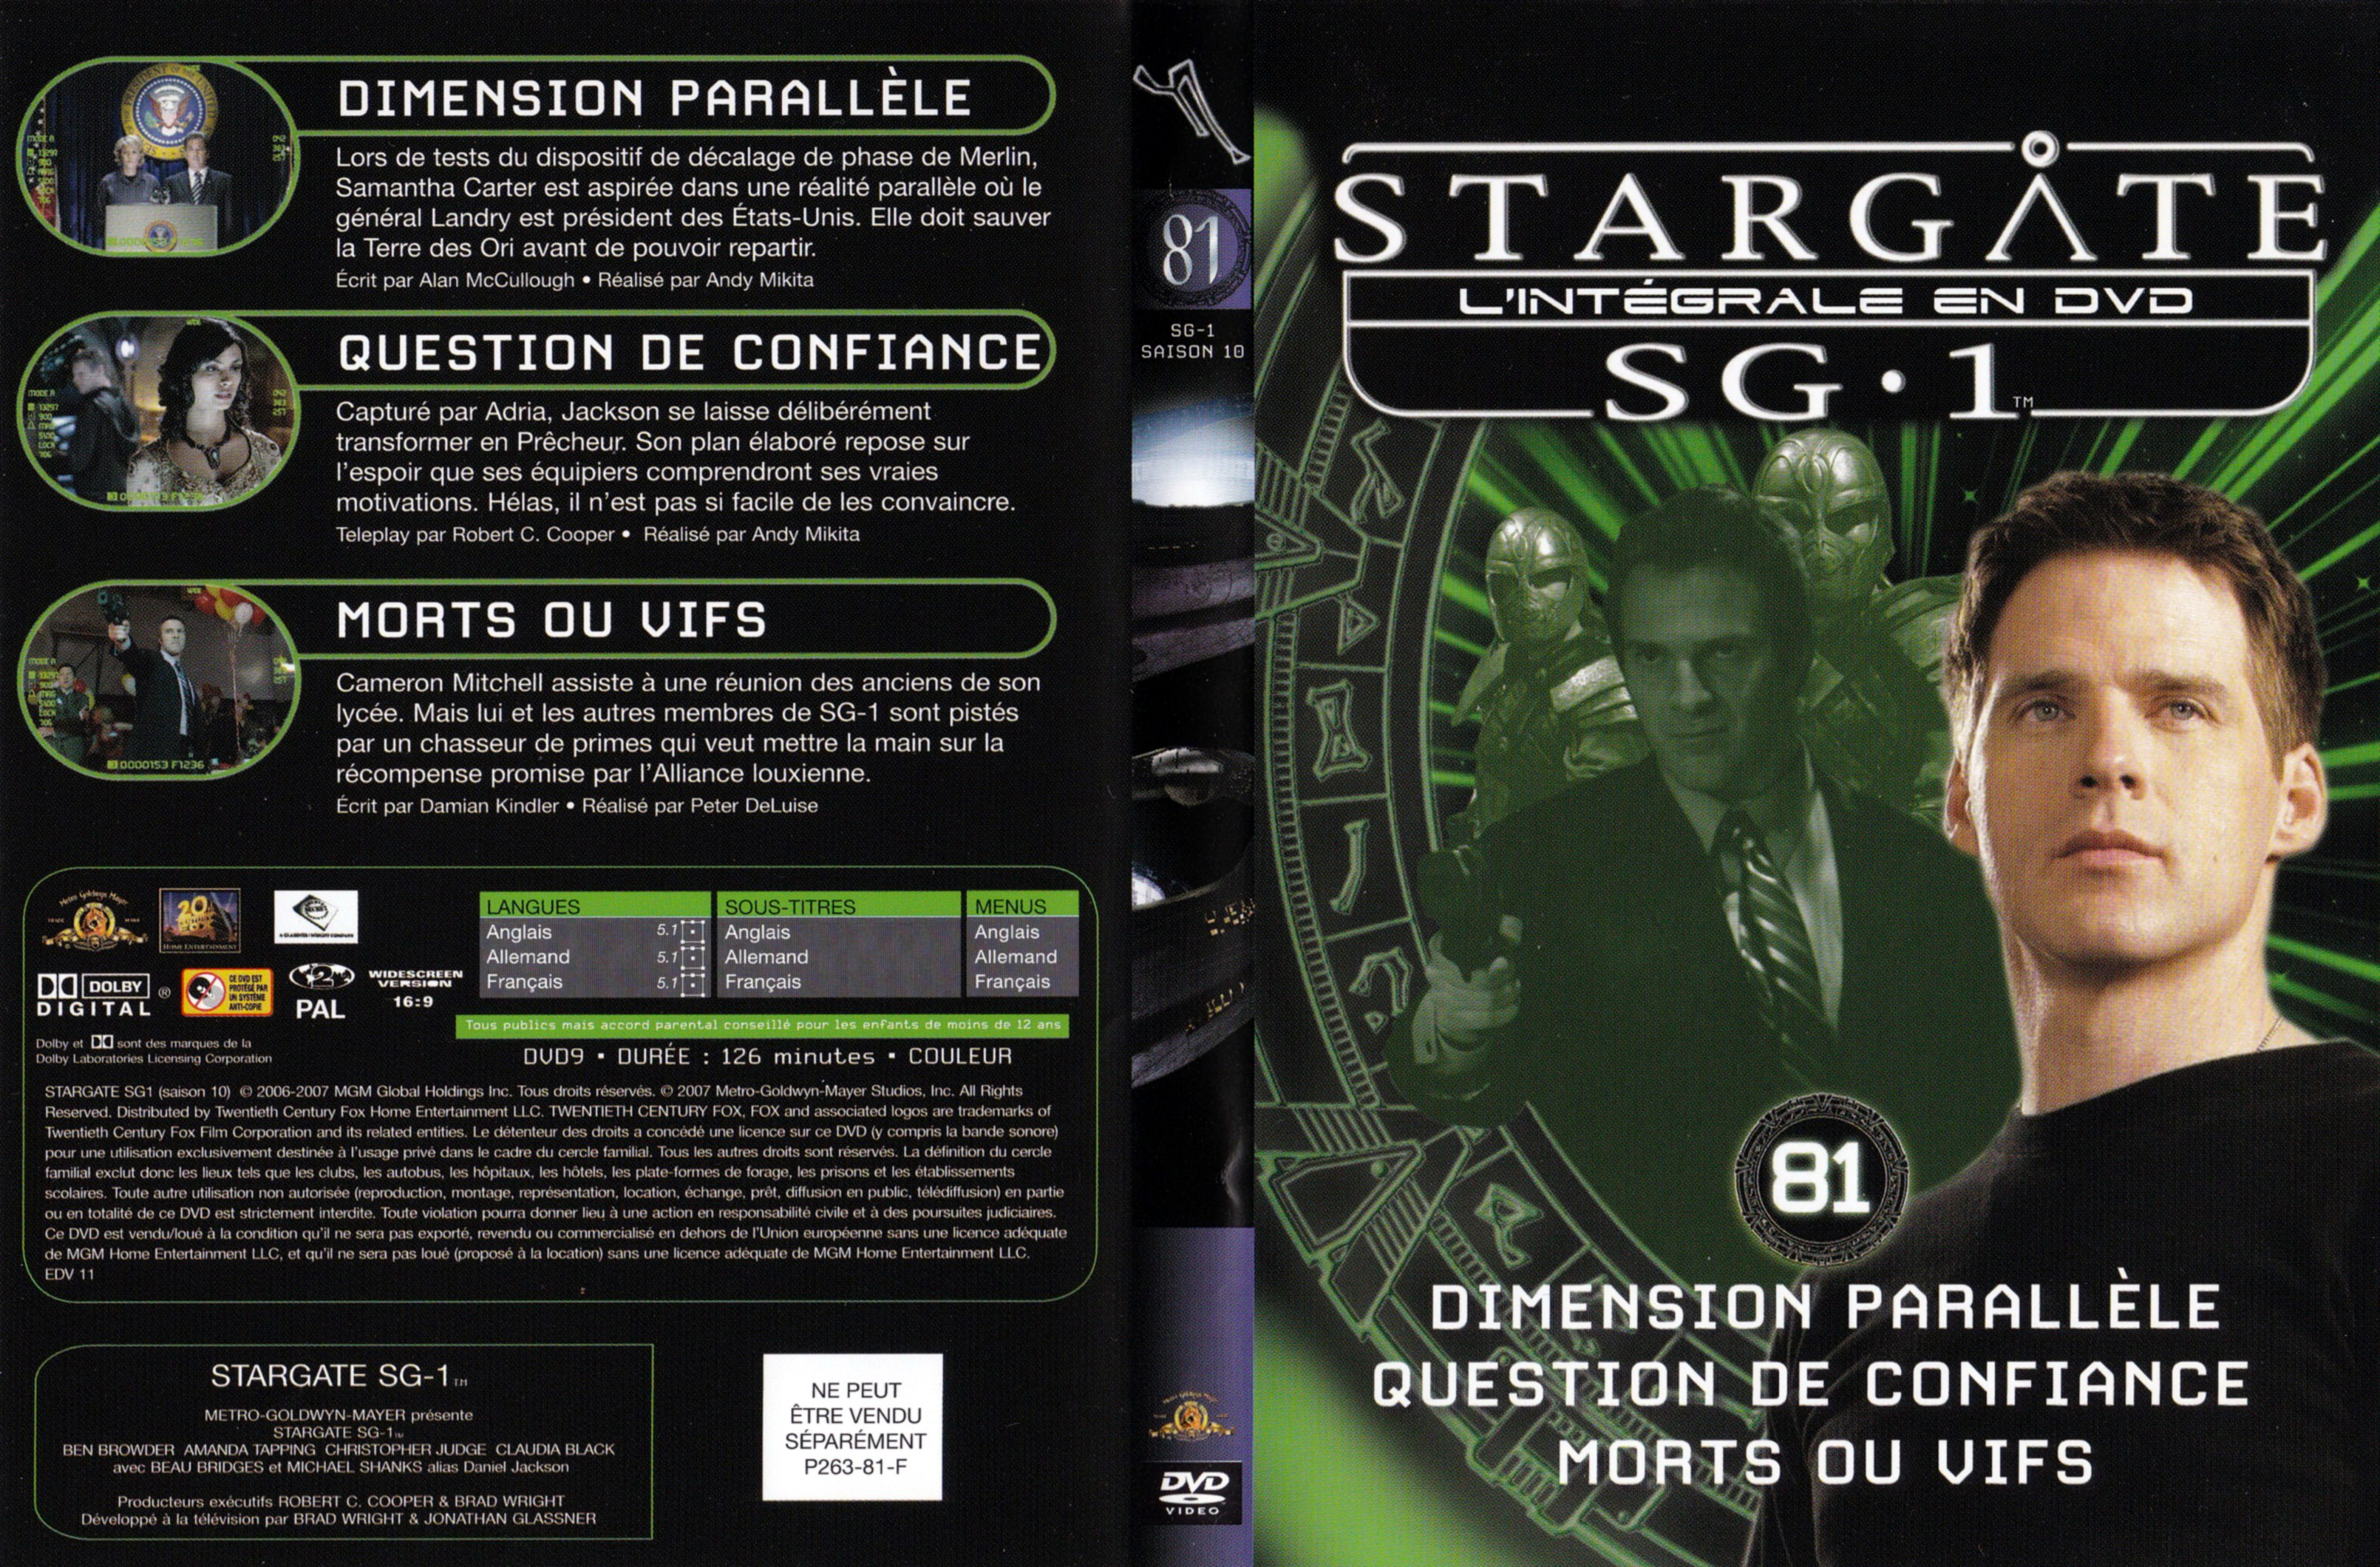 Jaquette DVD Stargate SG1 Intgrale Saison 10 vol 81